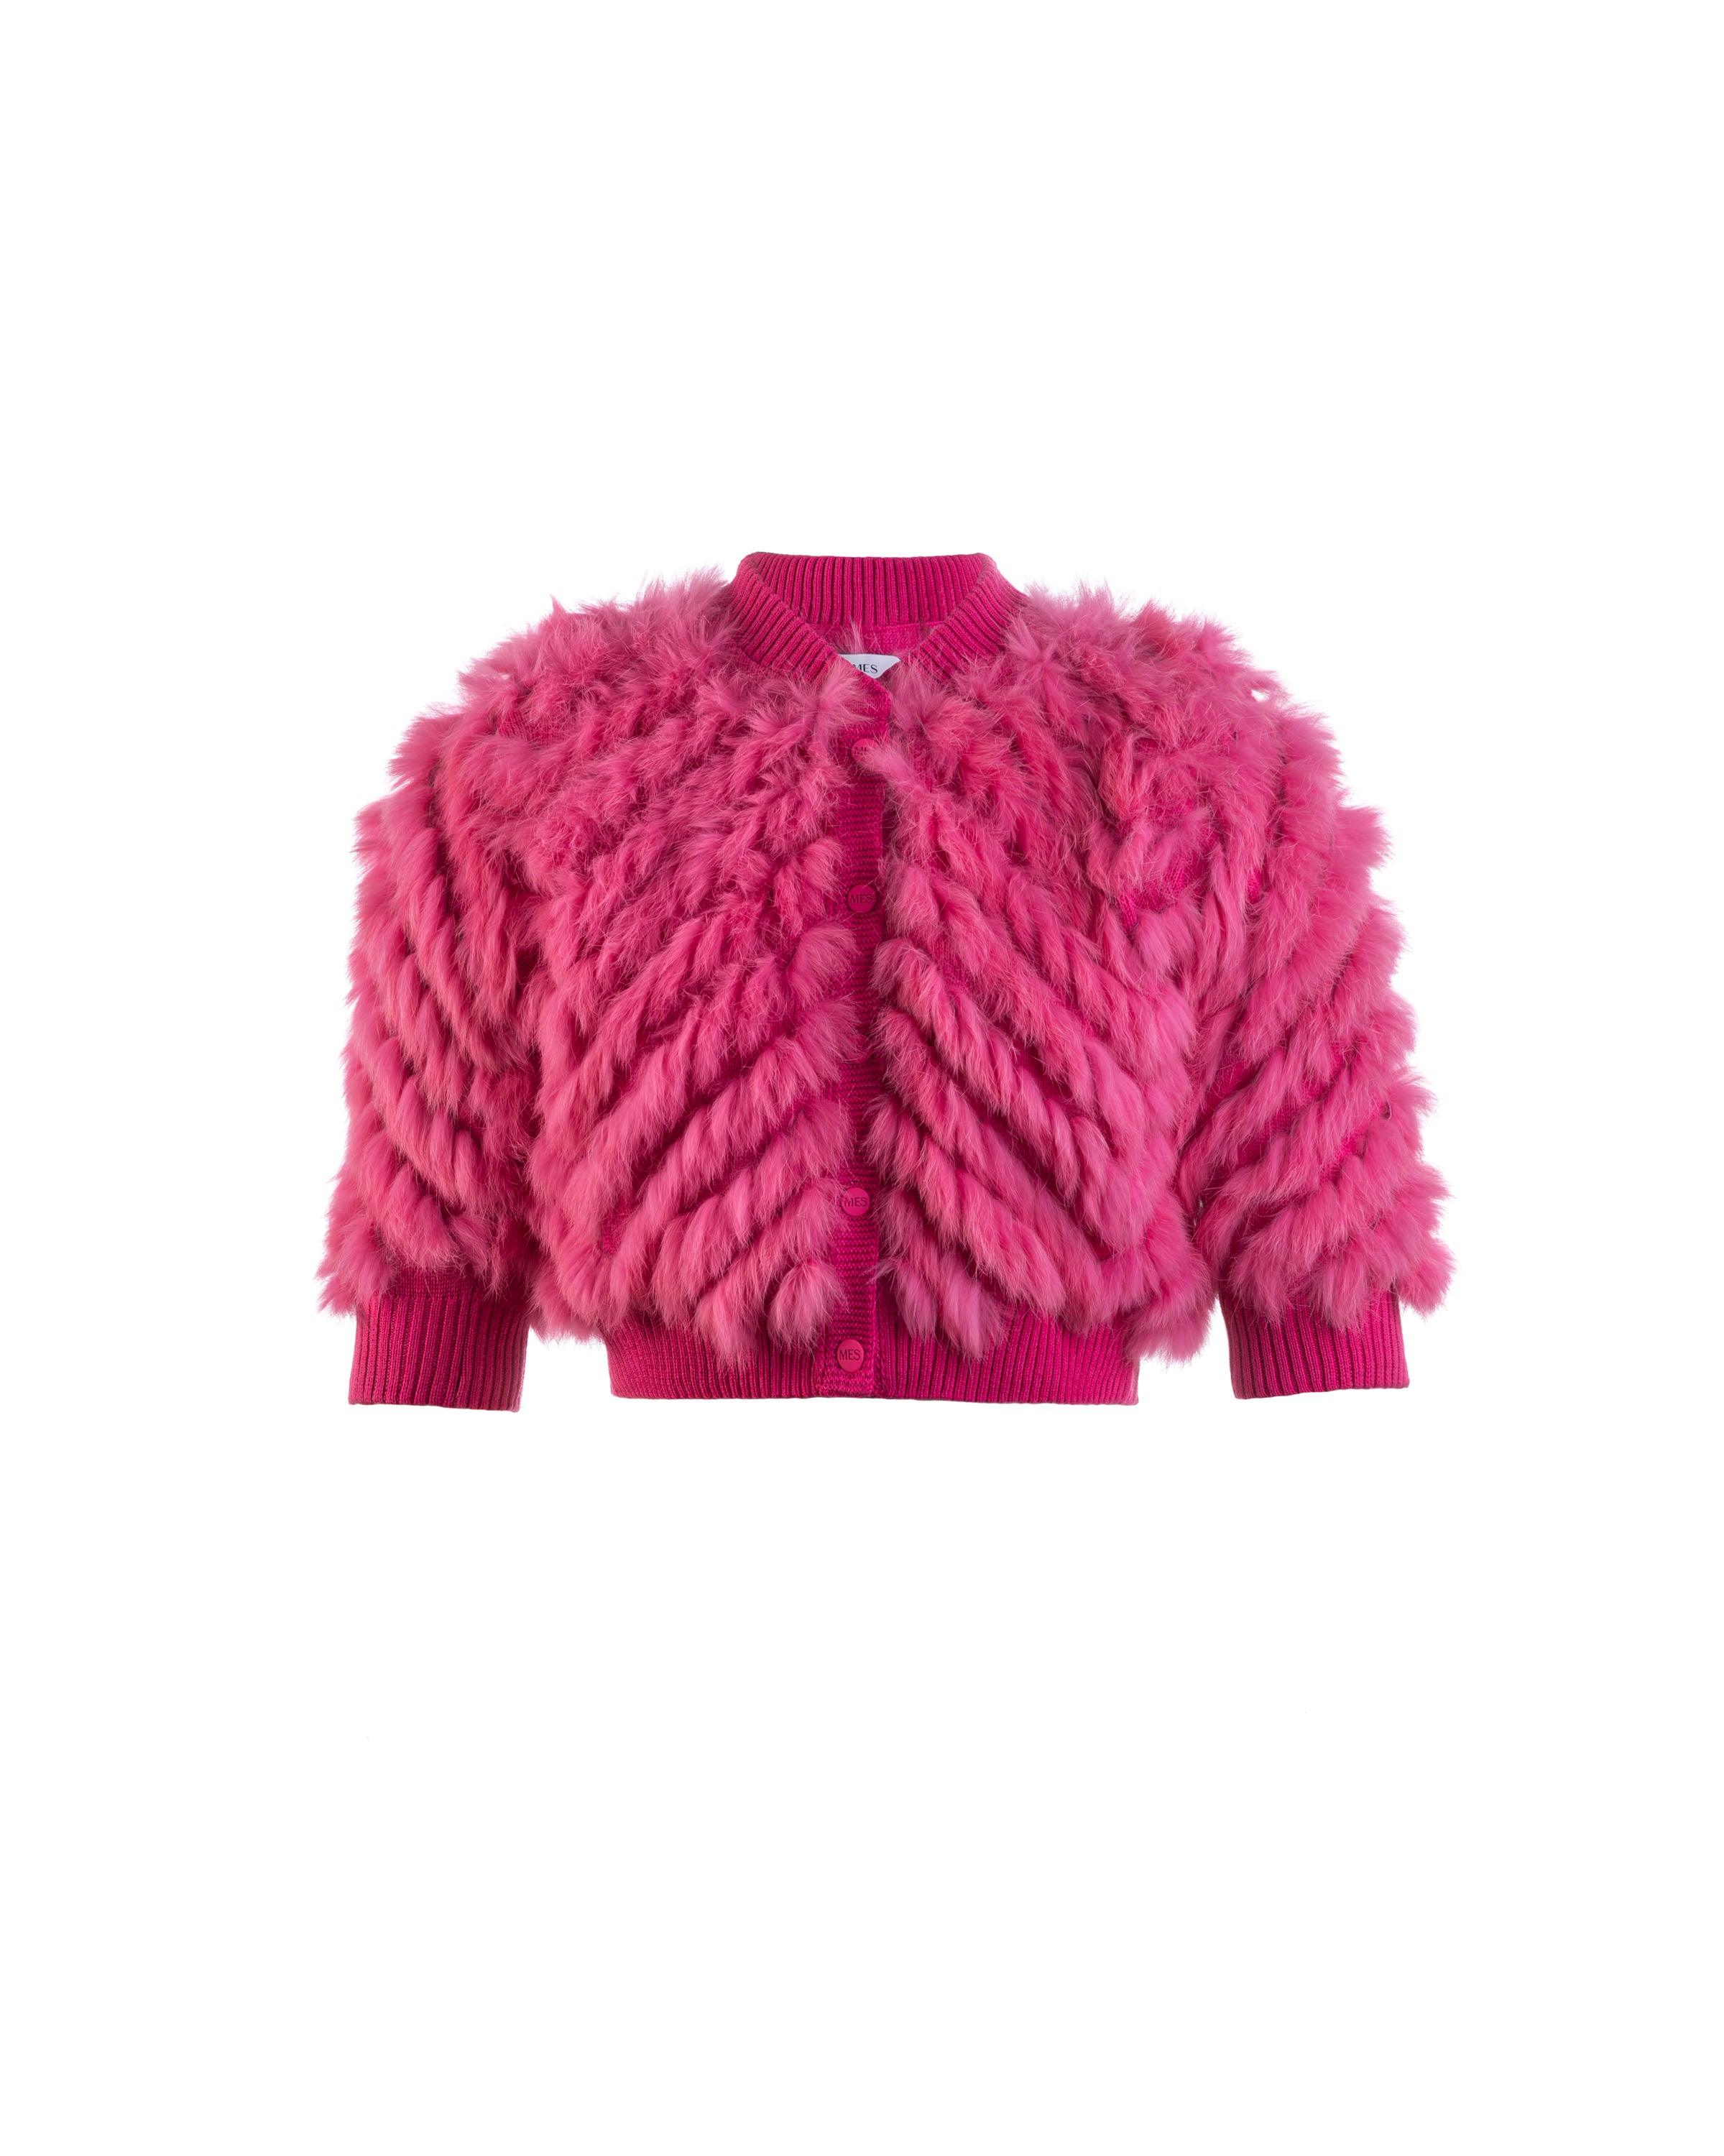 Casaqueto em renda de tricot zigzag pink - MES